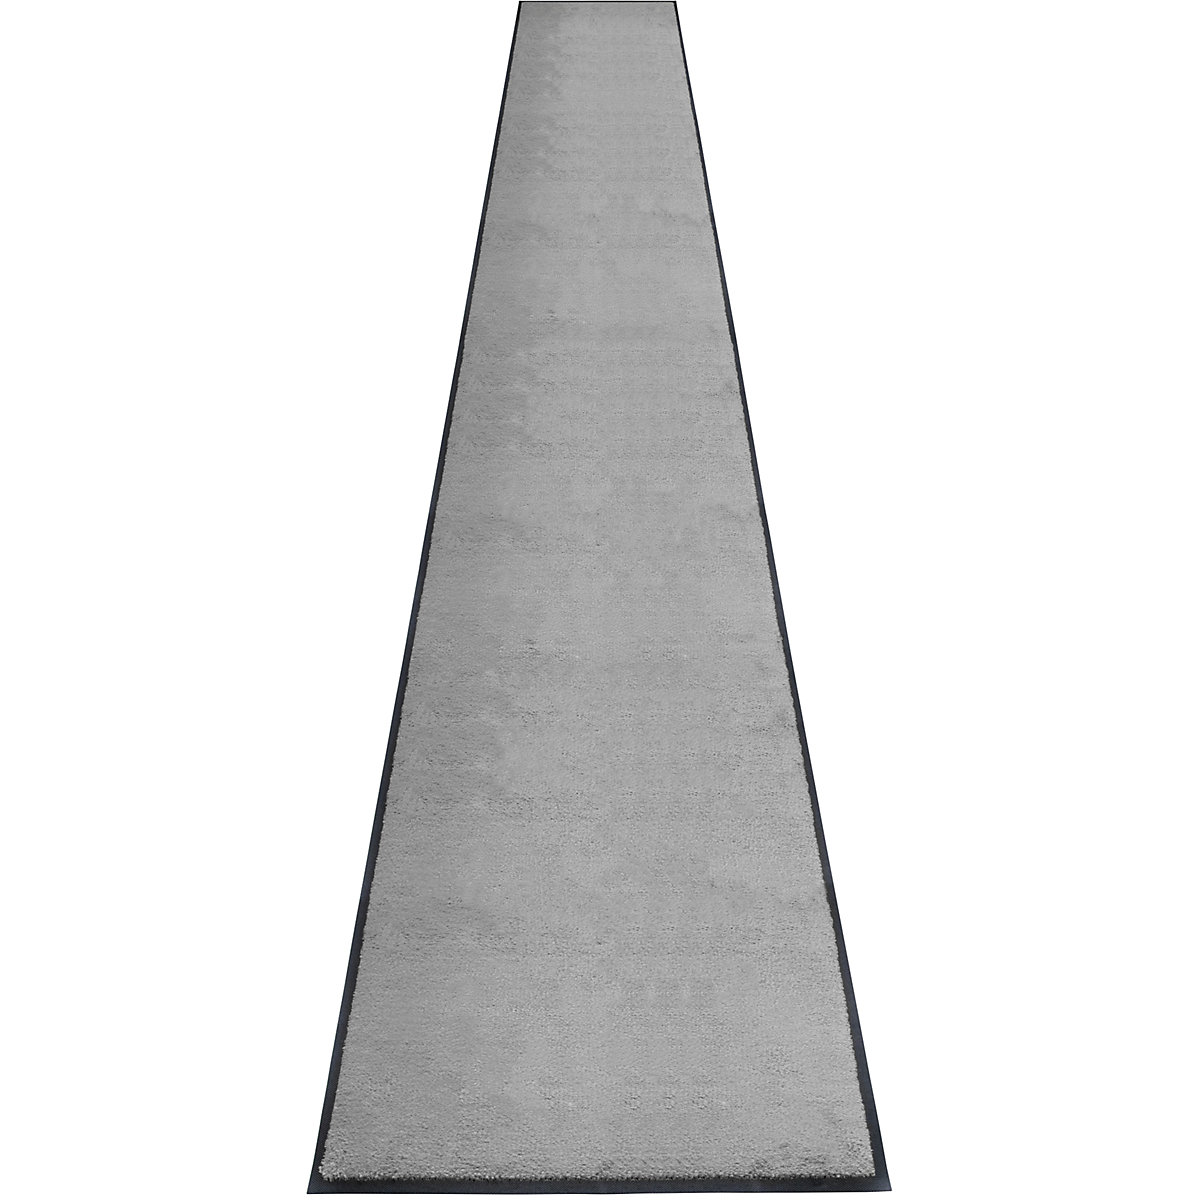 Tapis de propreté EAZYCARE STYLE, L x l 3000 x 850 mm, gris basalte